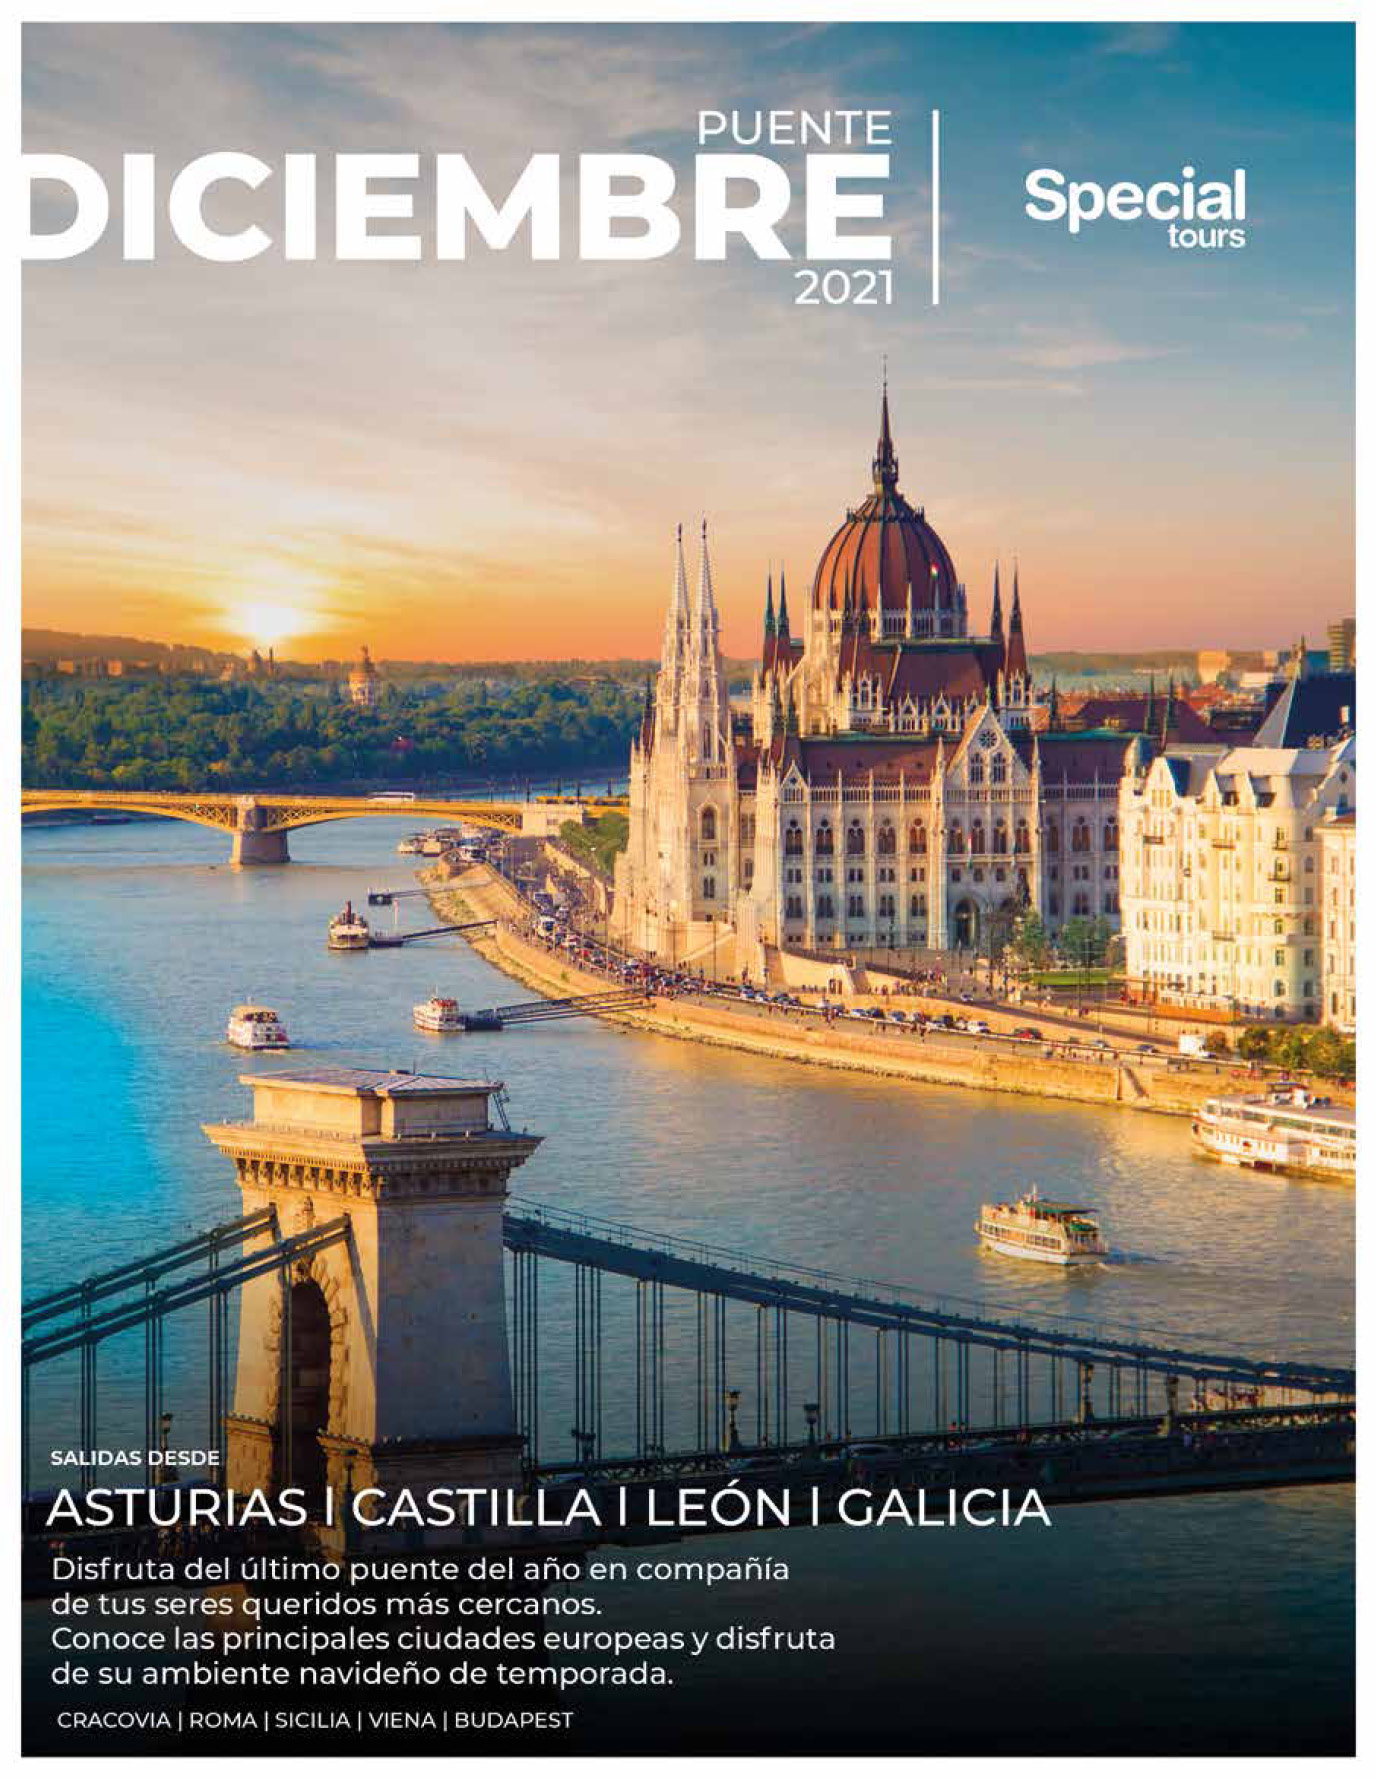 Catalogo Special Tours Puente de Diciembre 2021 en Europa salidas con vuelos directos desde Asturias Galicia Castilla y Leon